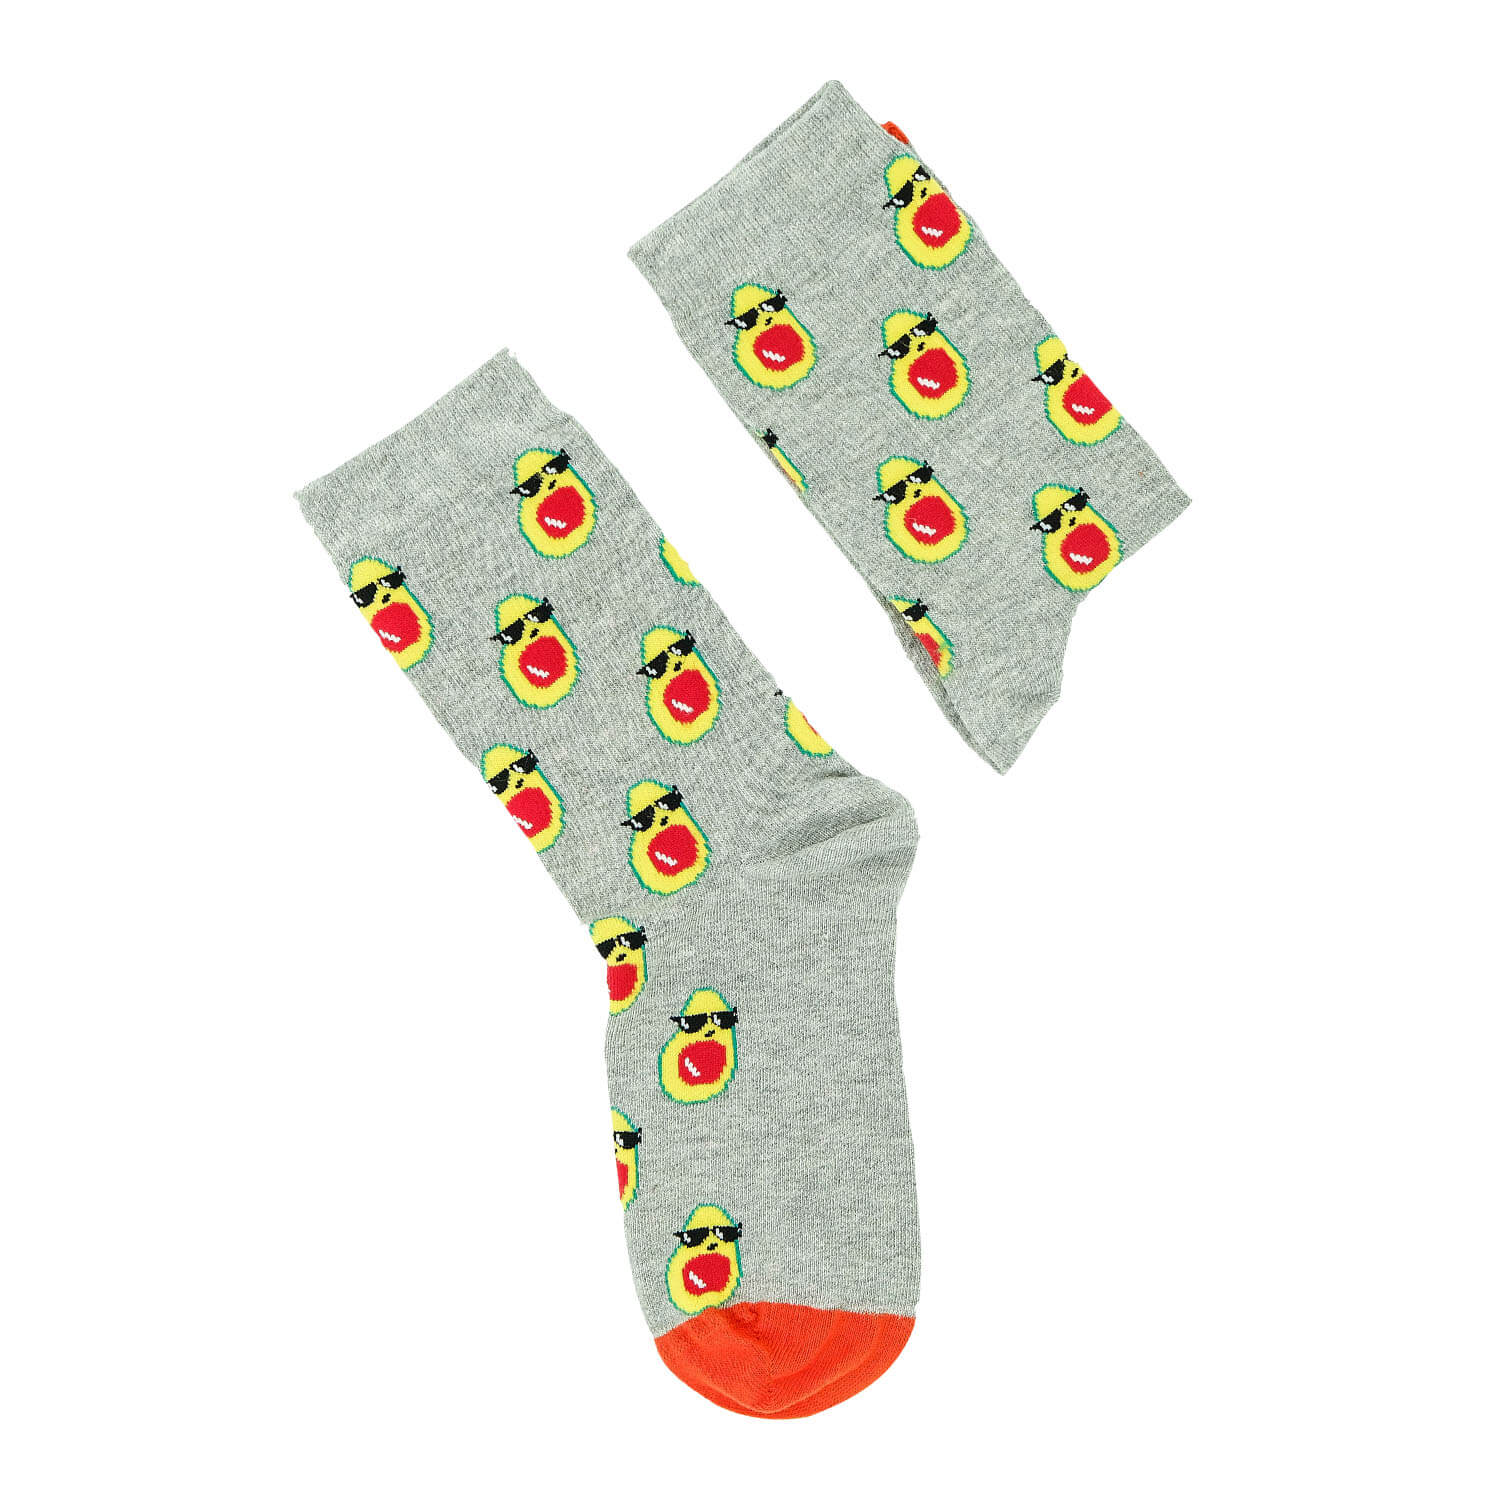 Moonwalk Sock - Gözlüklü Avokado Desenli Çorap